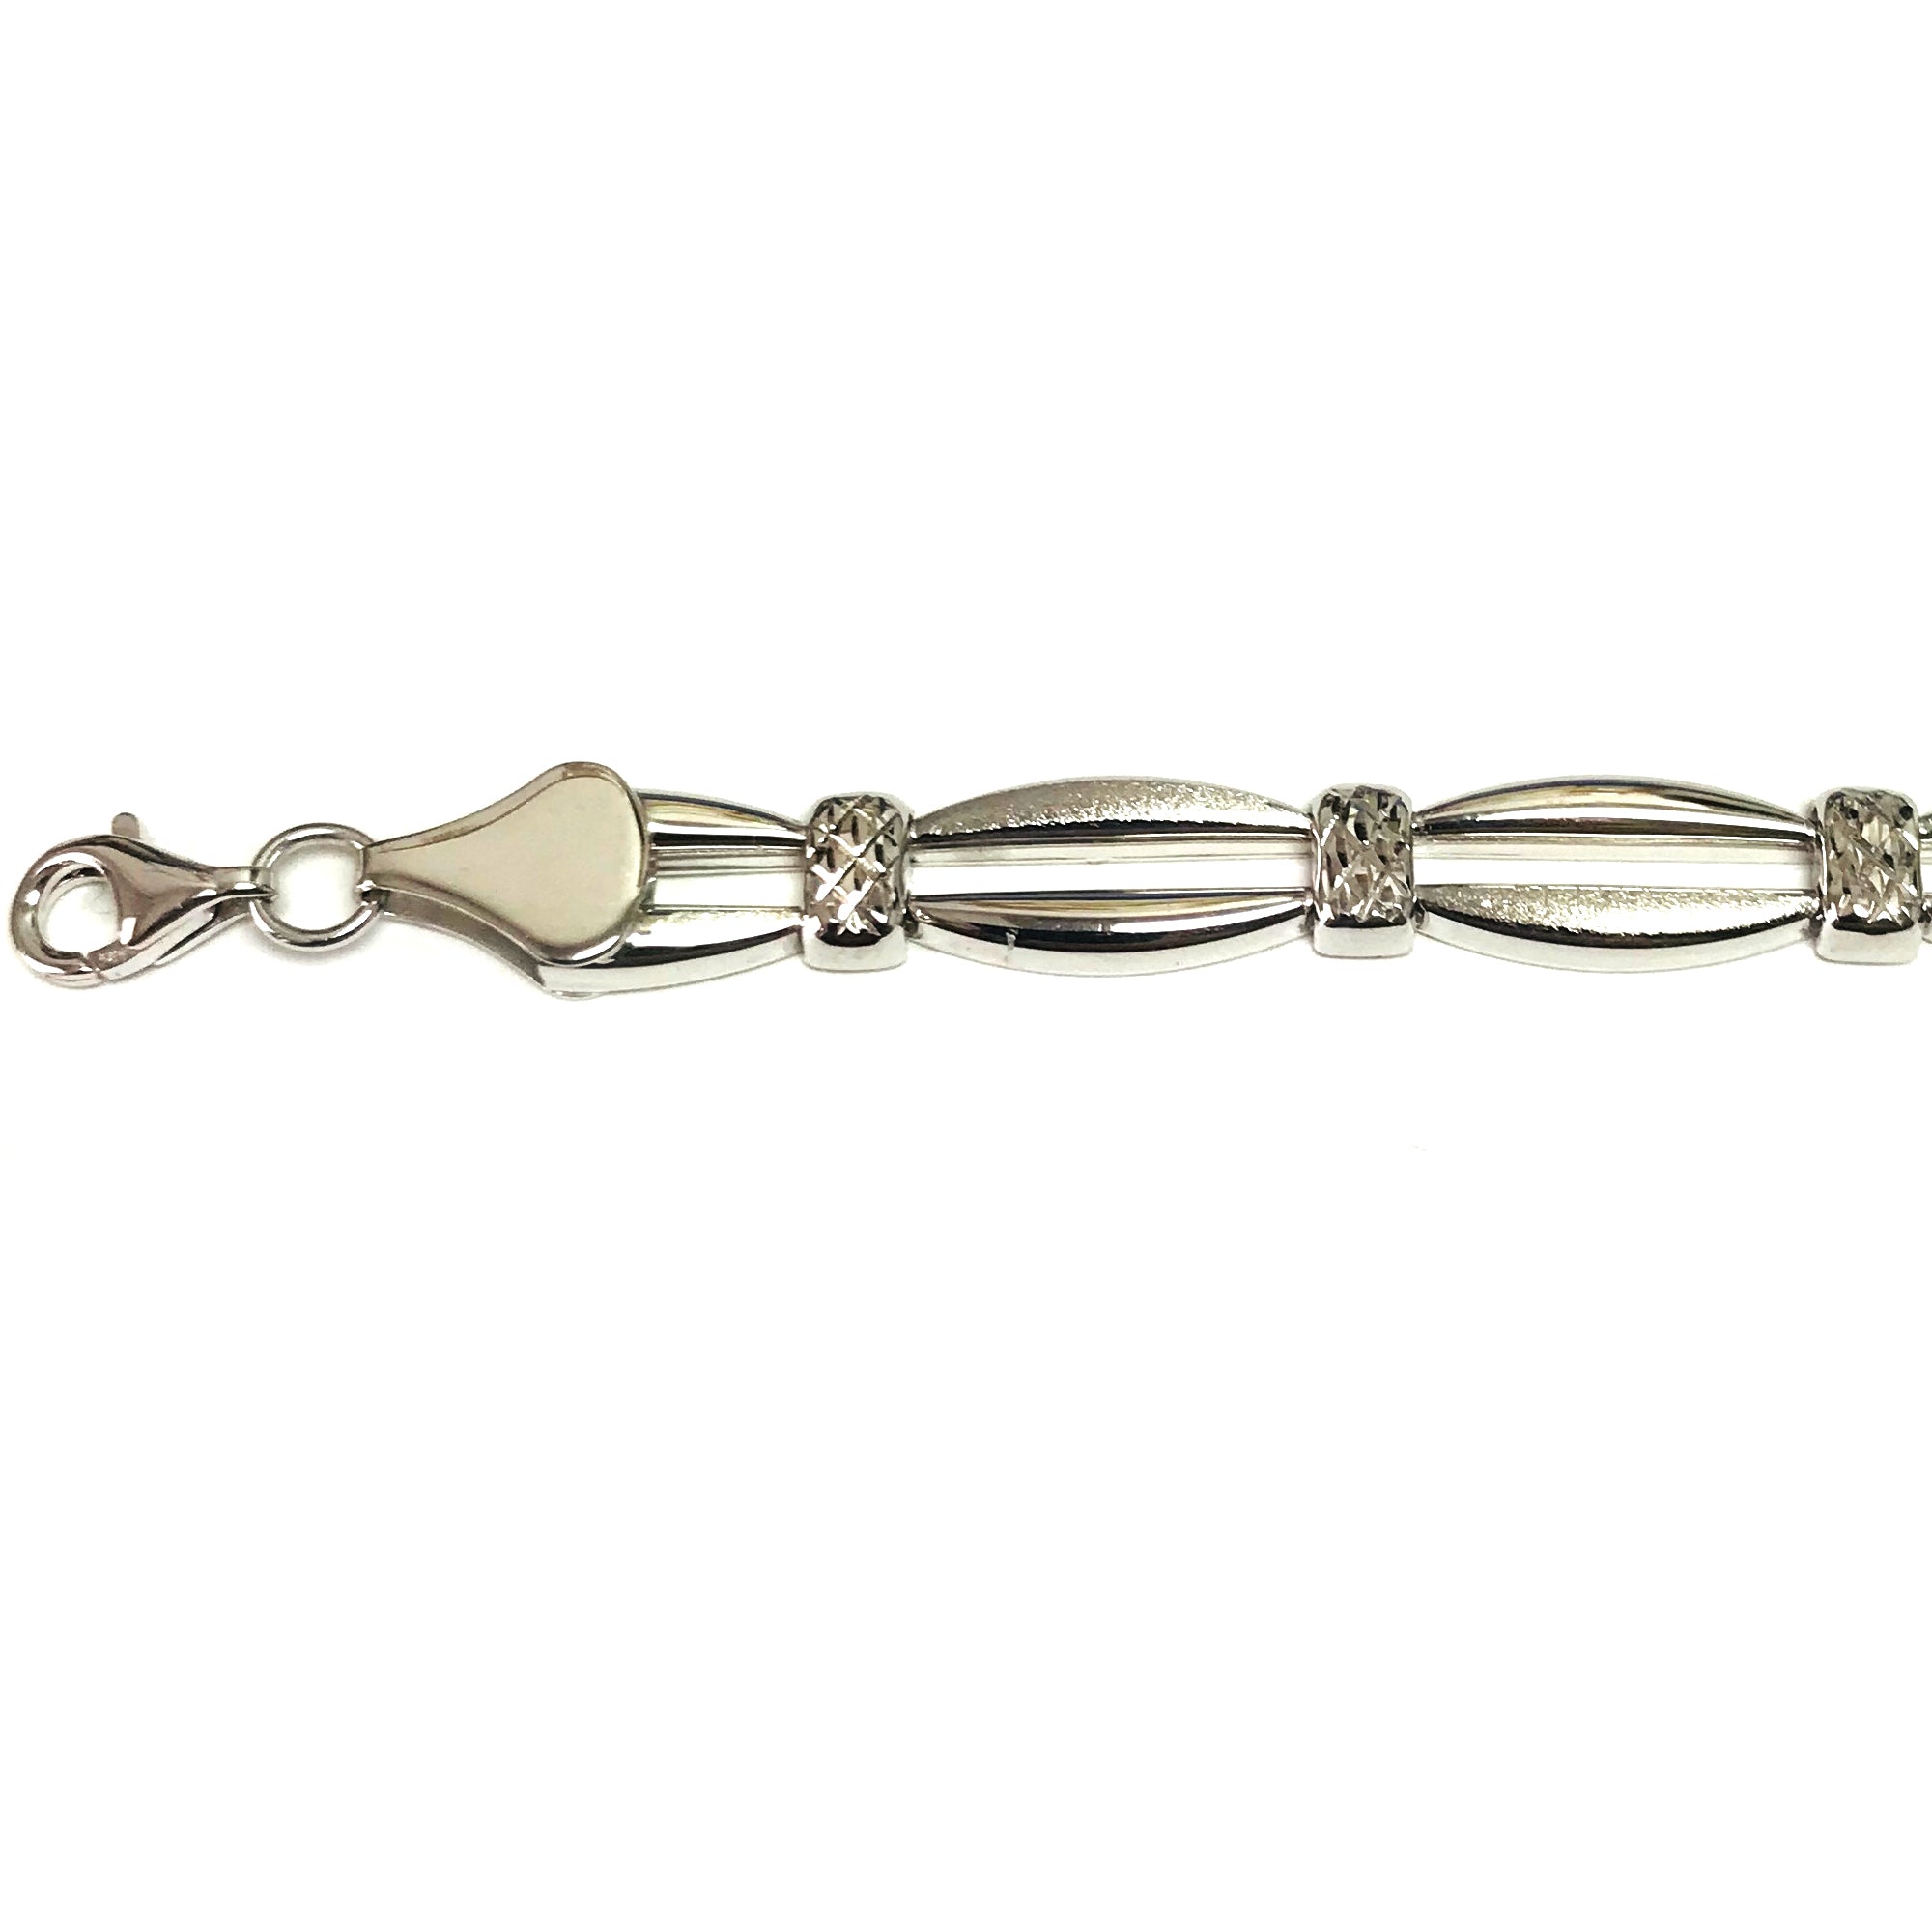 14k White Diamond Cut Bar Shaped Links Bracelet, 7.25" fine designer jewelry for men and women